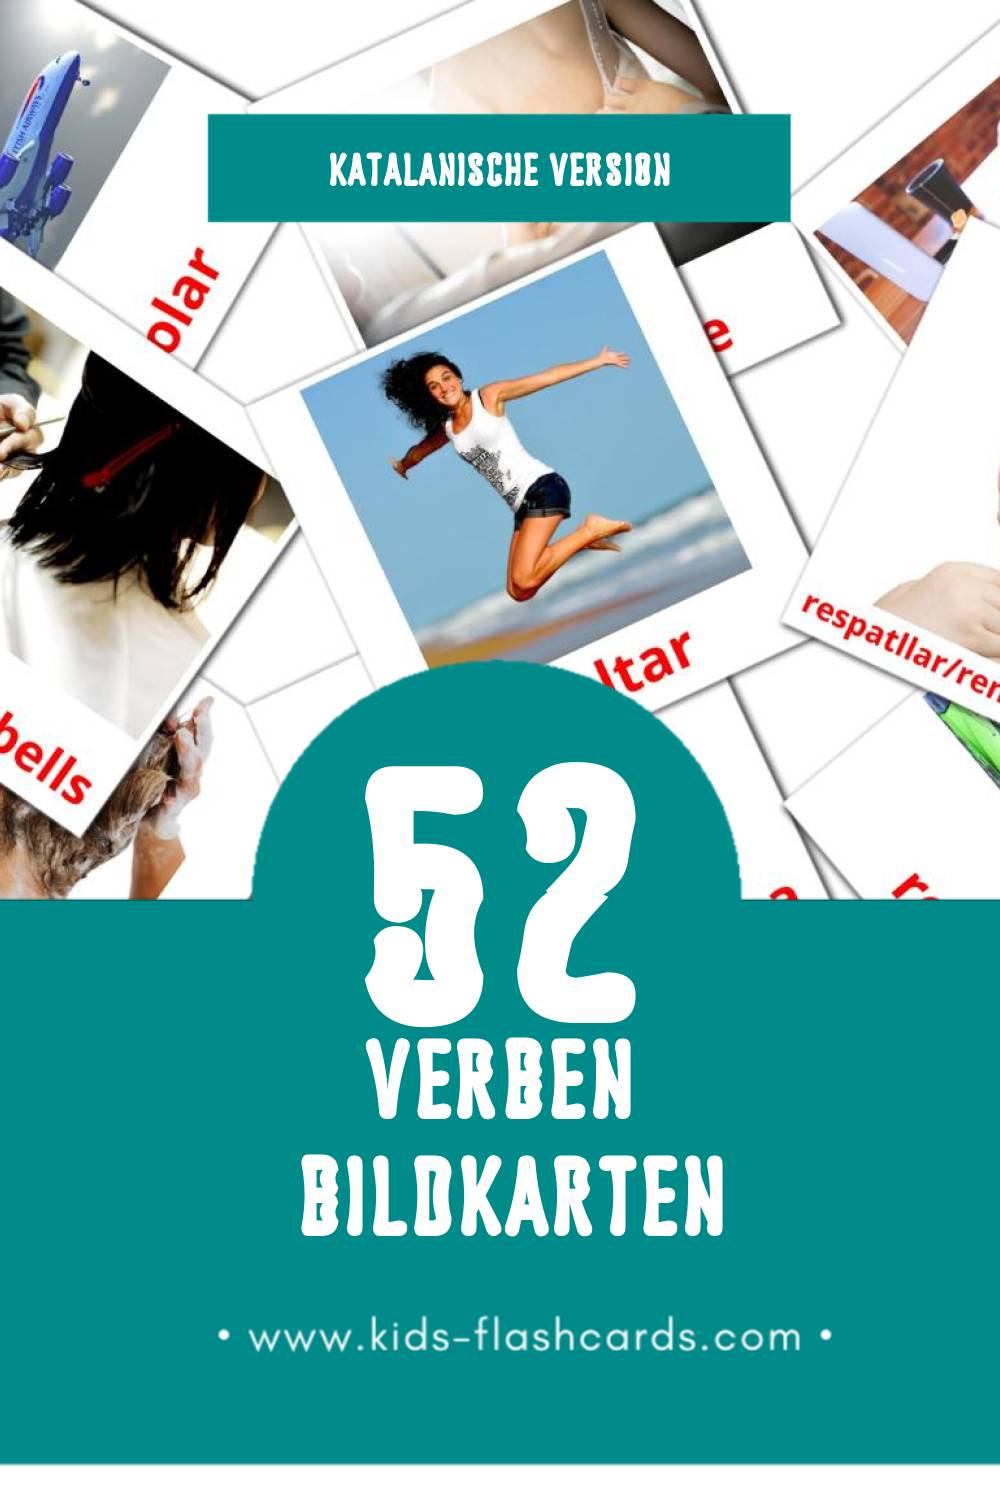 Visual Verbs Flashcards für Kleinkinder (52 Karten in Katalanisch)